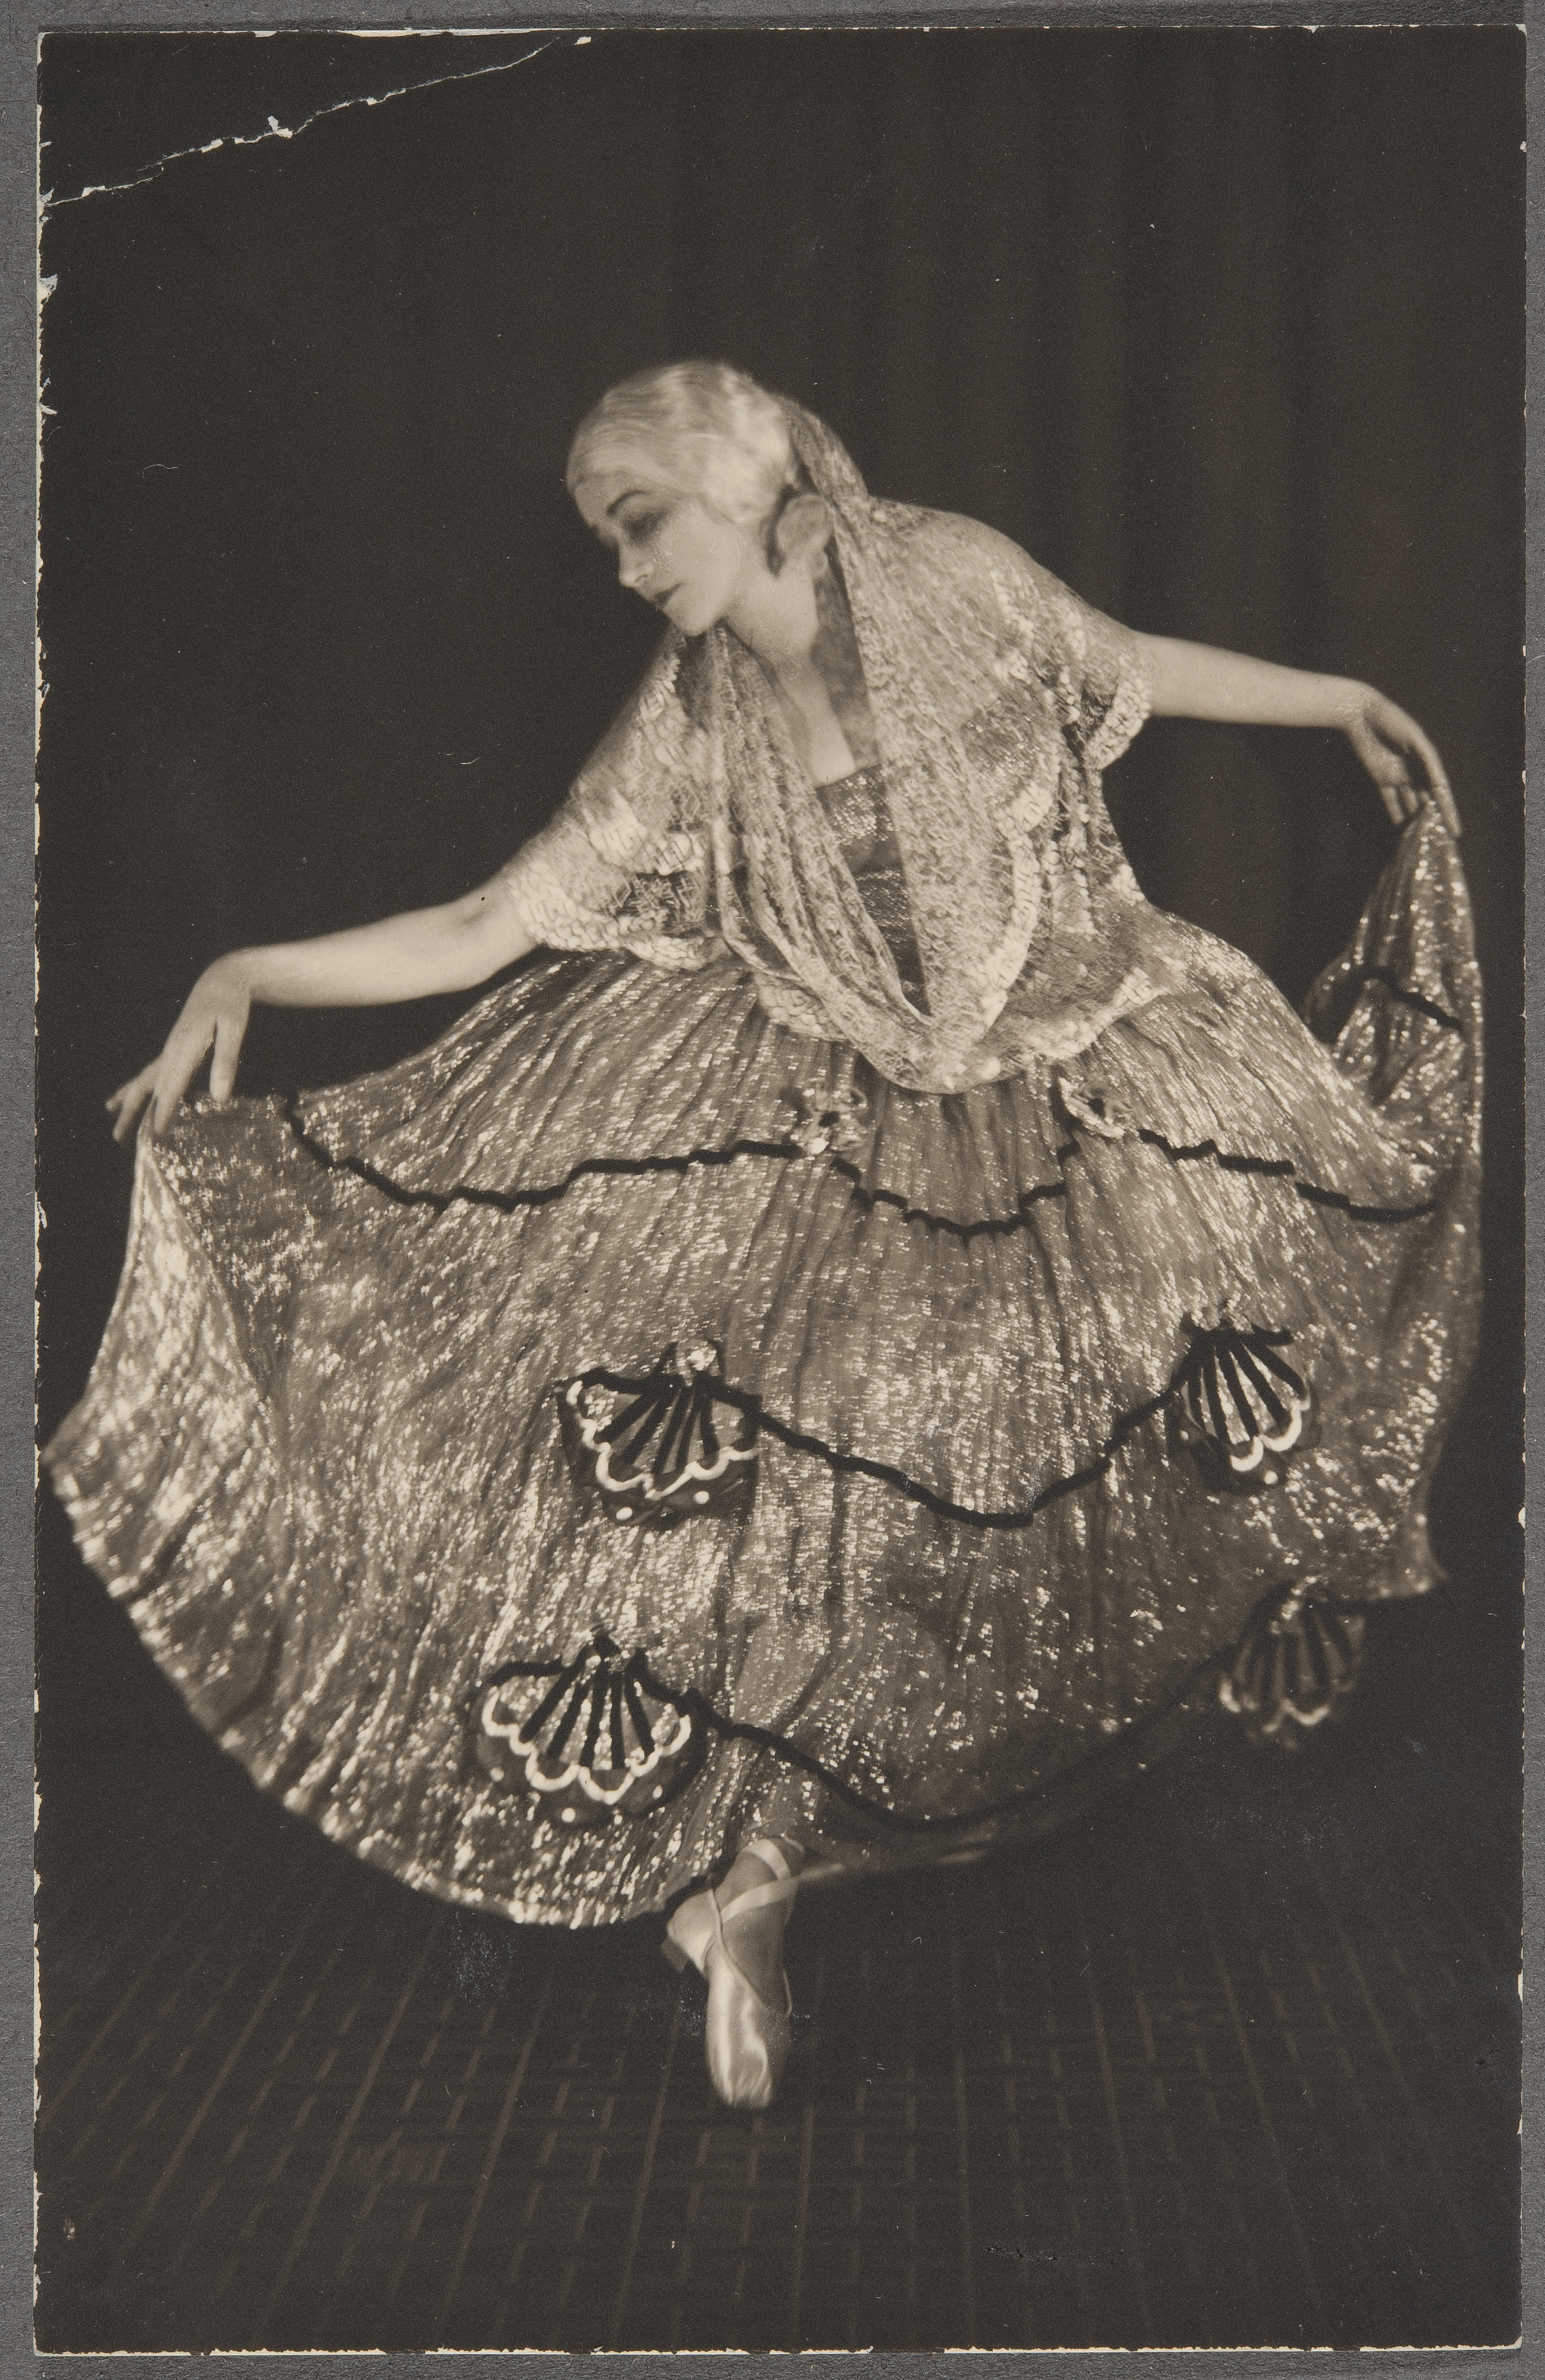 Tanssitaiteilija, tanssija ja koreografi Edith von Bonsdorff, Helsinki, Suomi (Finland), 1920s. | src FHA ~ Museovirasto